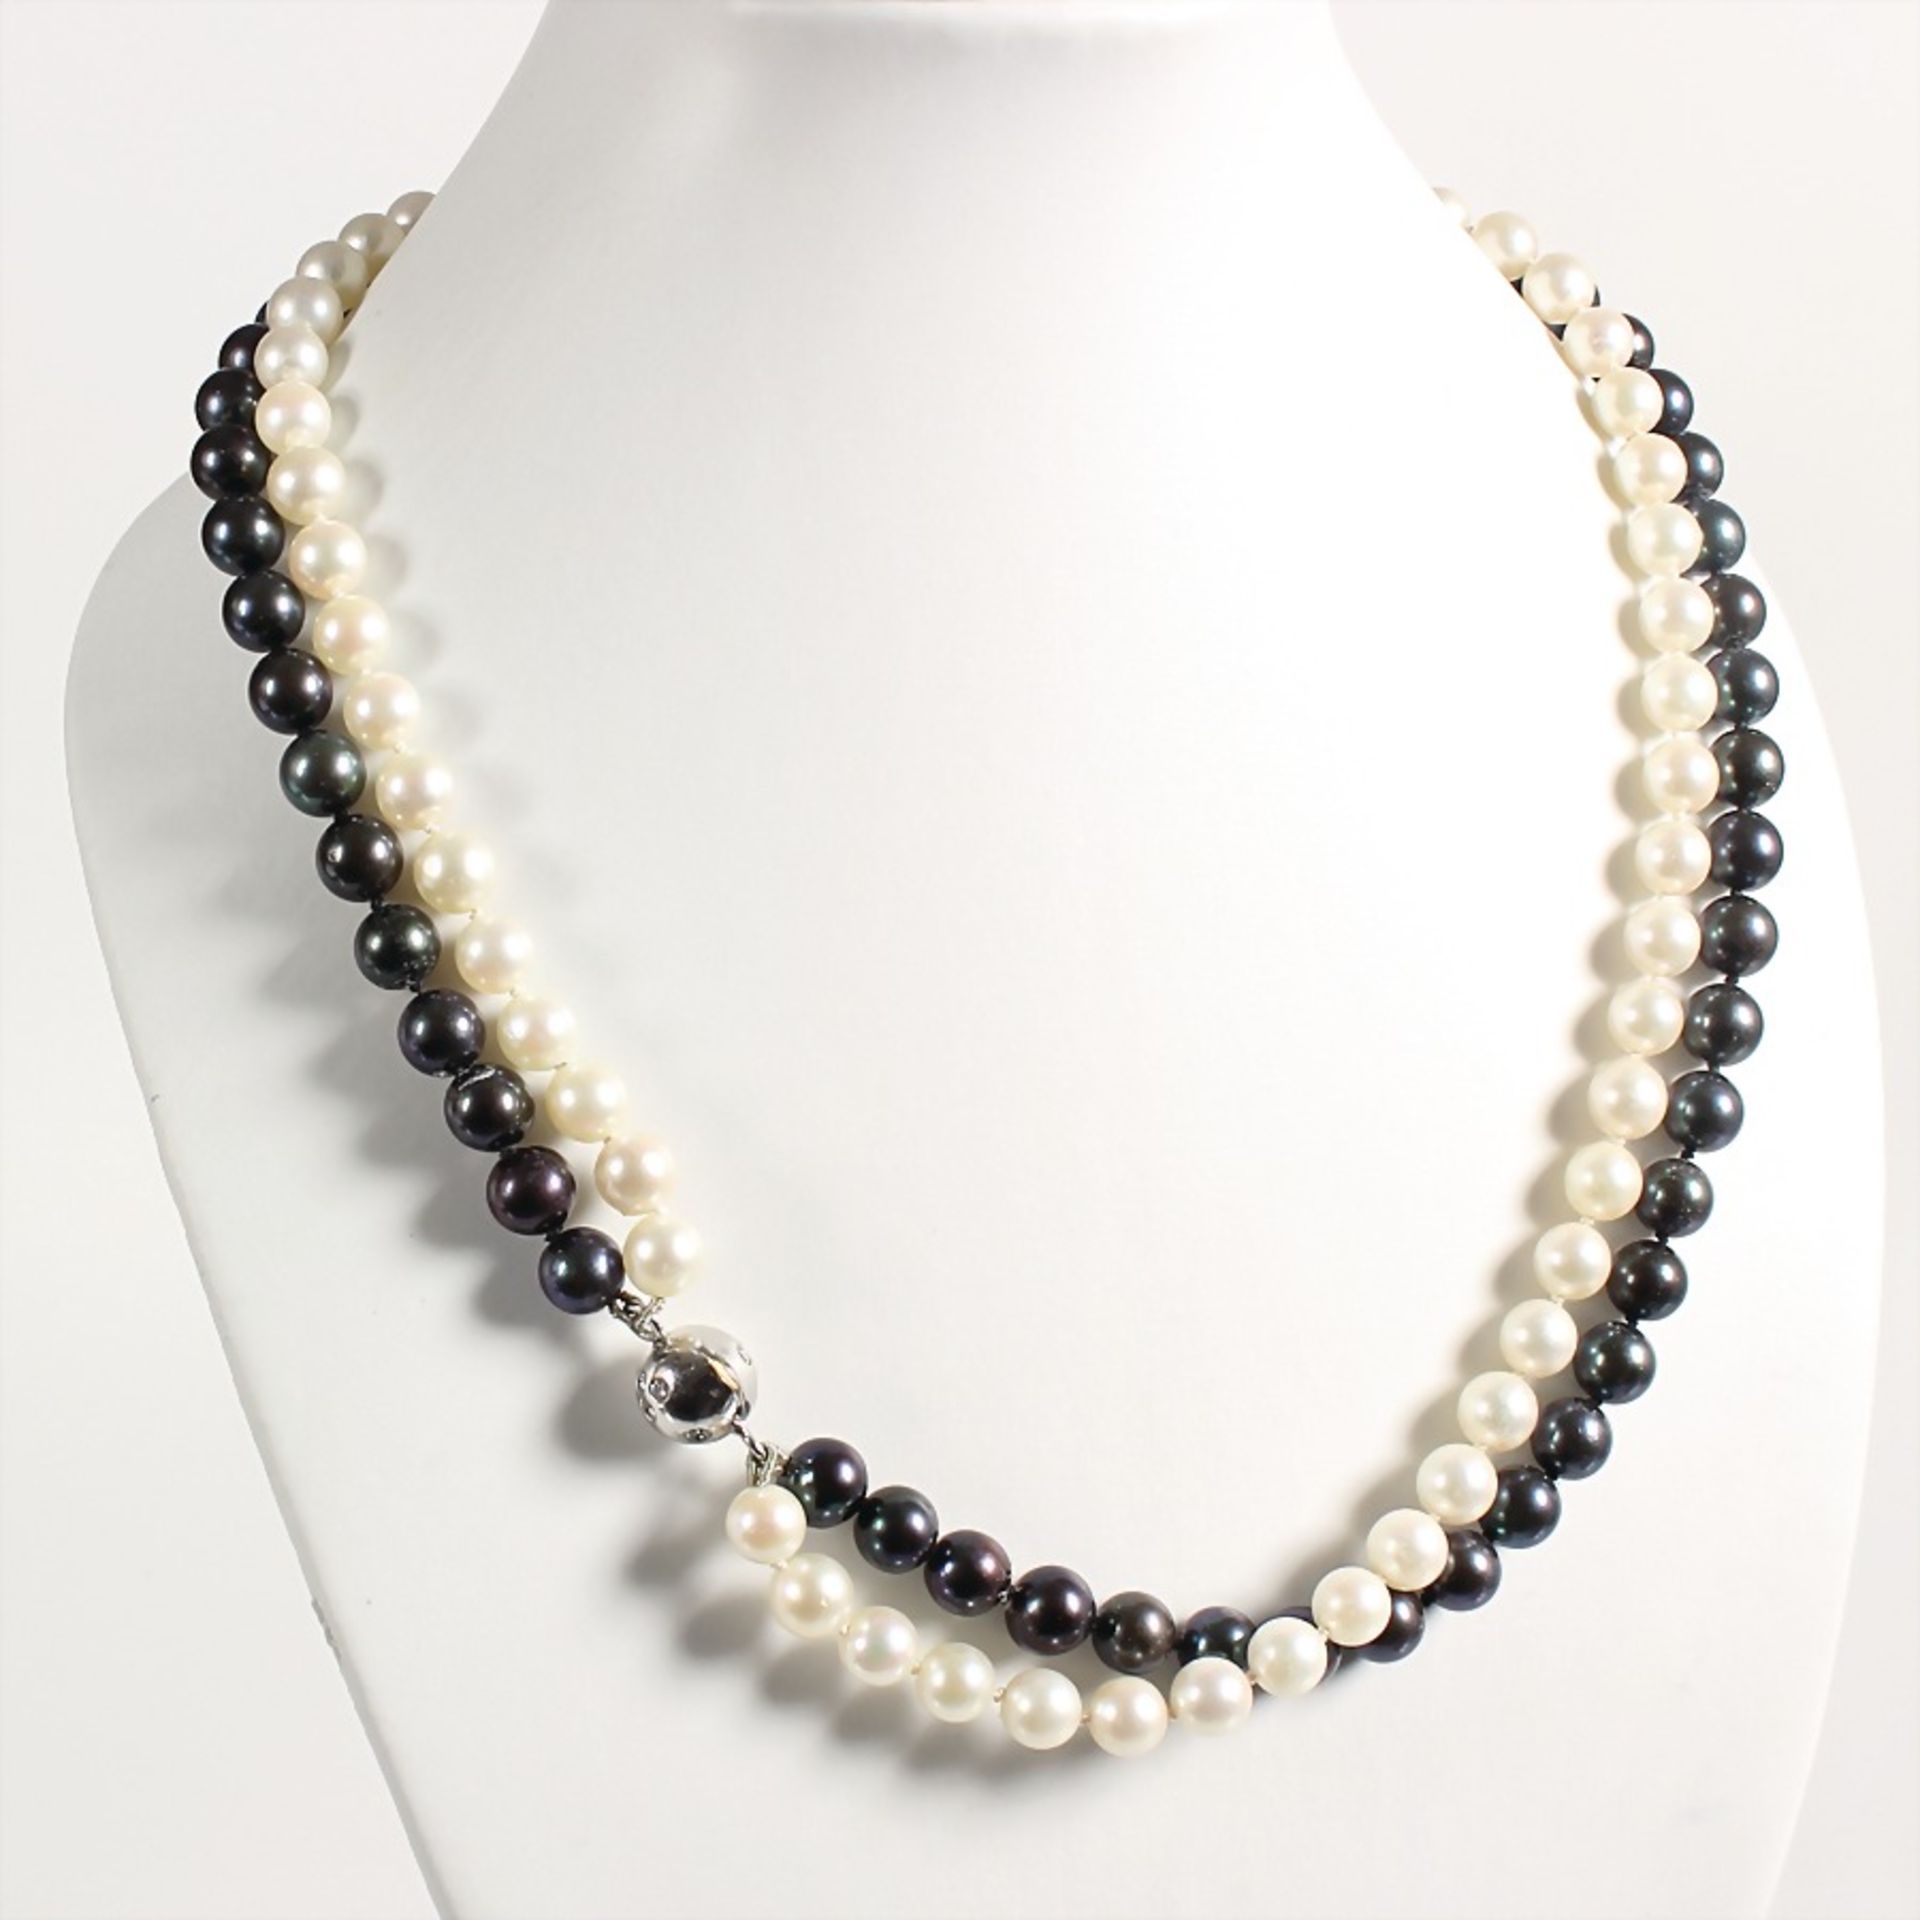 double-strand pearl necklace (white-black), white gold 750/000, signed GK (G. Krauss Stuttgart),